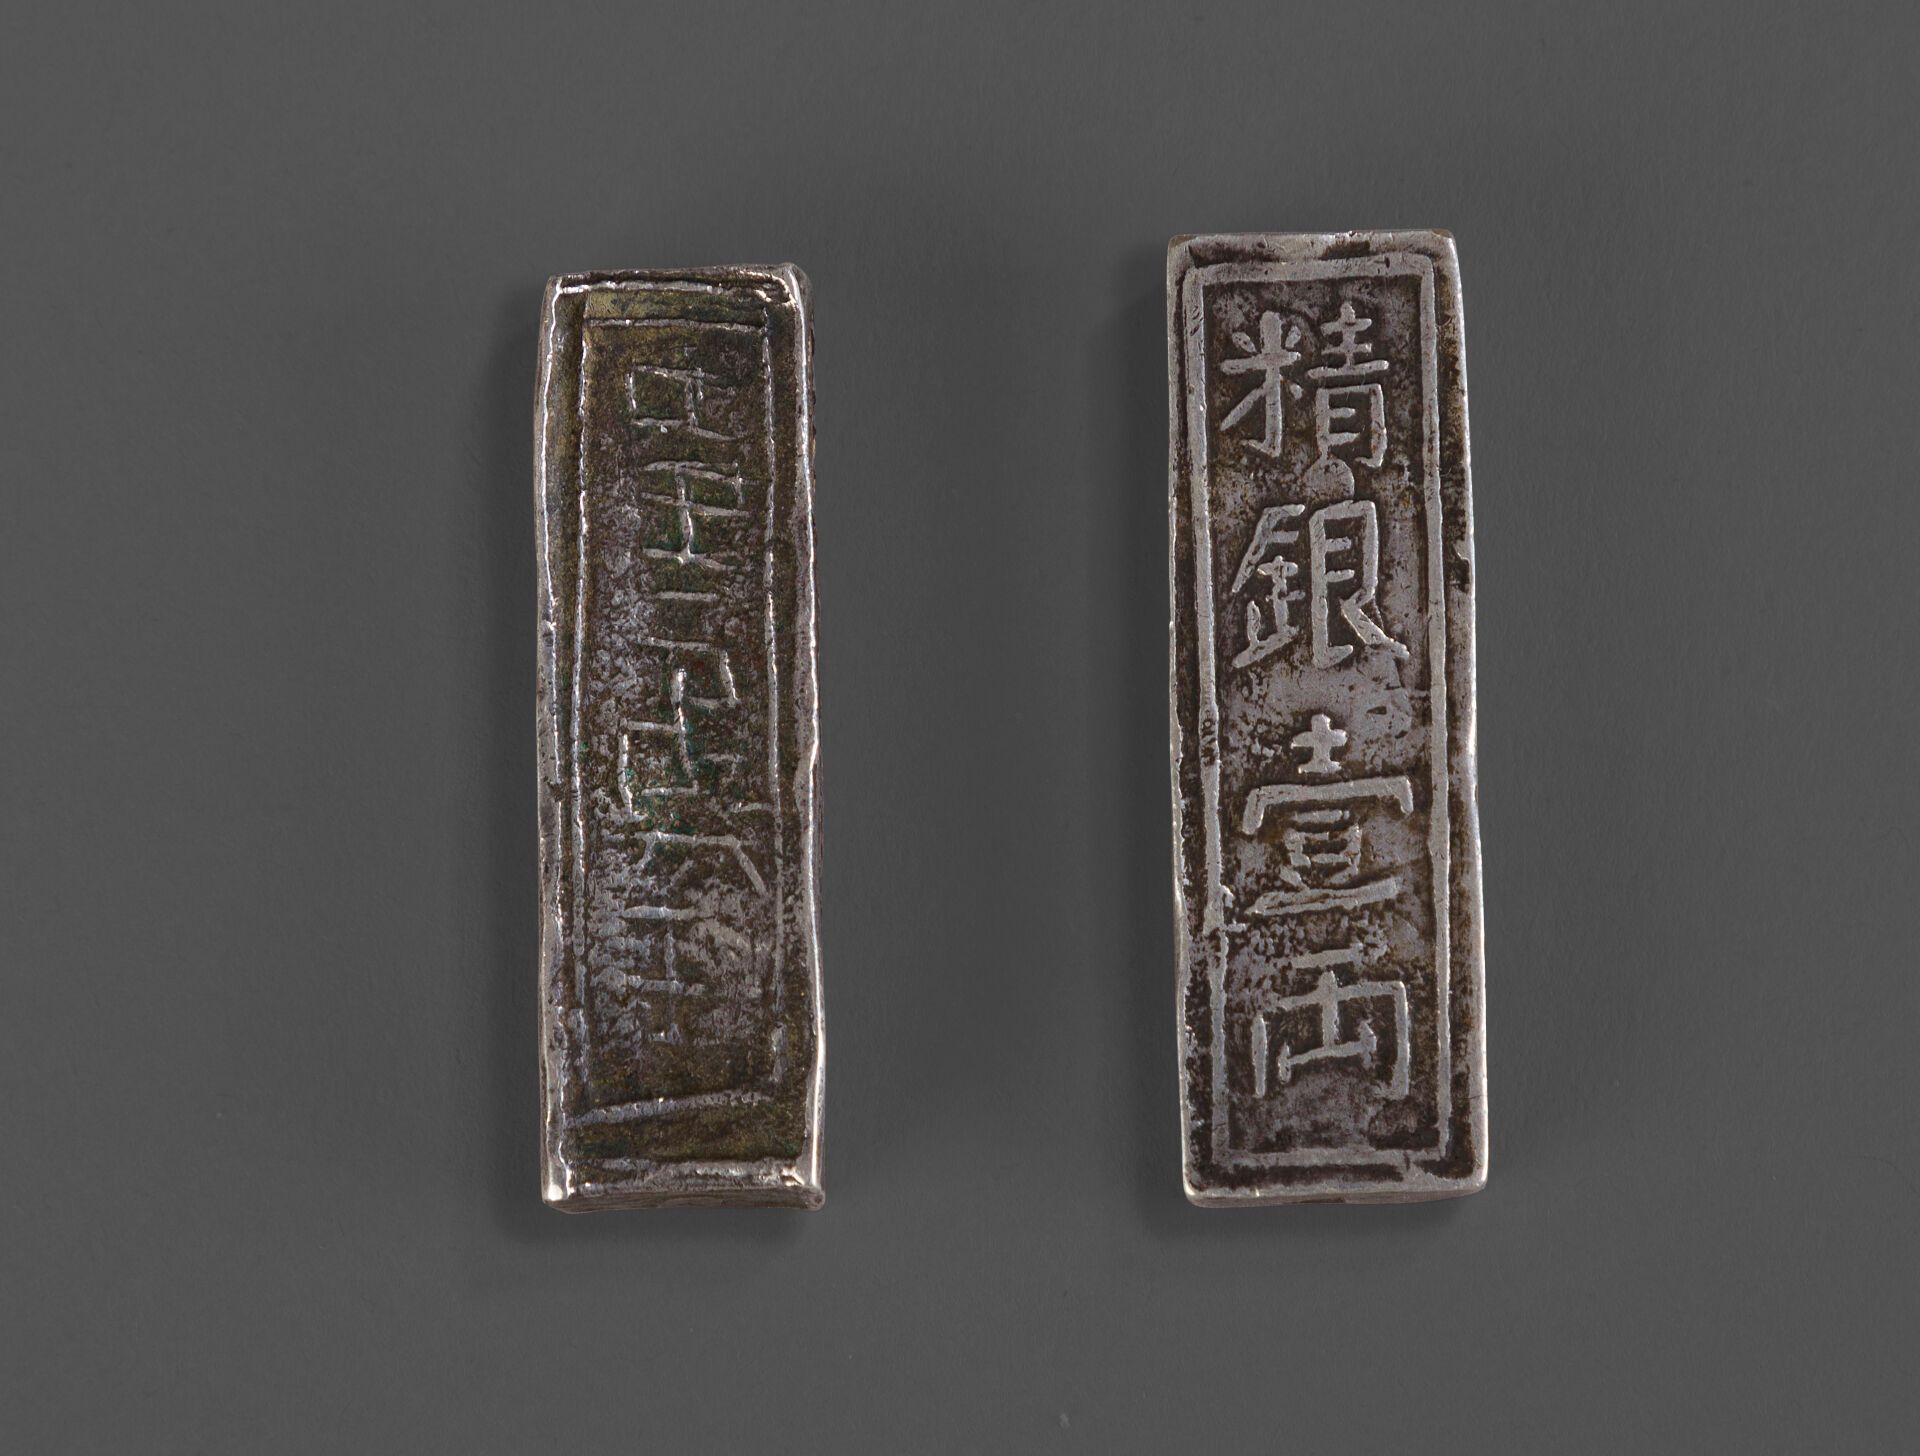 Null 1802-1820.
两个长方形800°/°°一郎银锭的重聚。四字款嘉隆年造 "Gia Long nien chê"，即 "嘉隆年造"。 
长：43 &hellip;